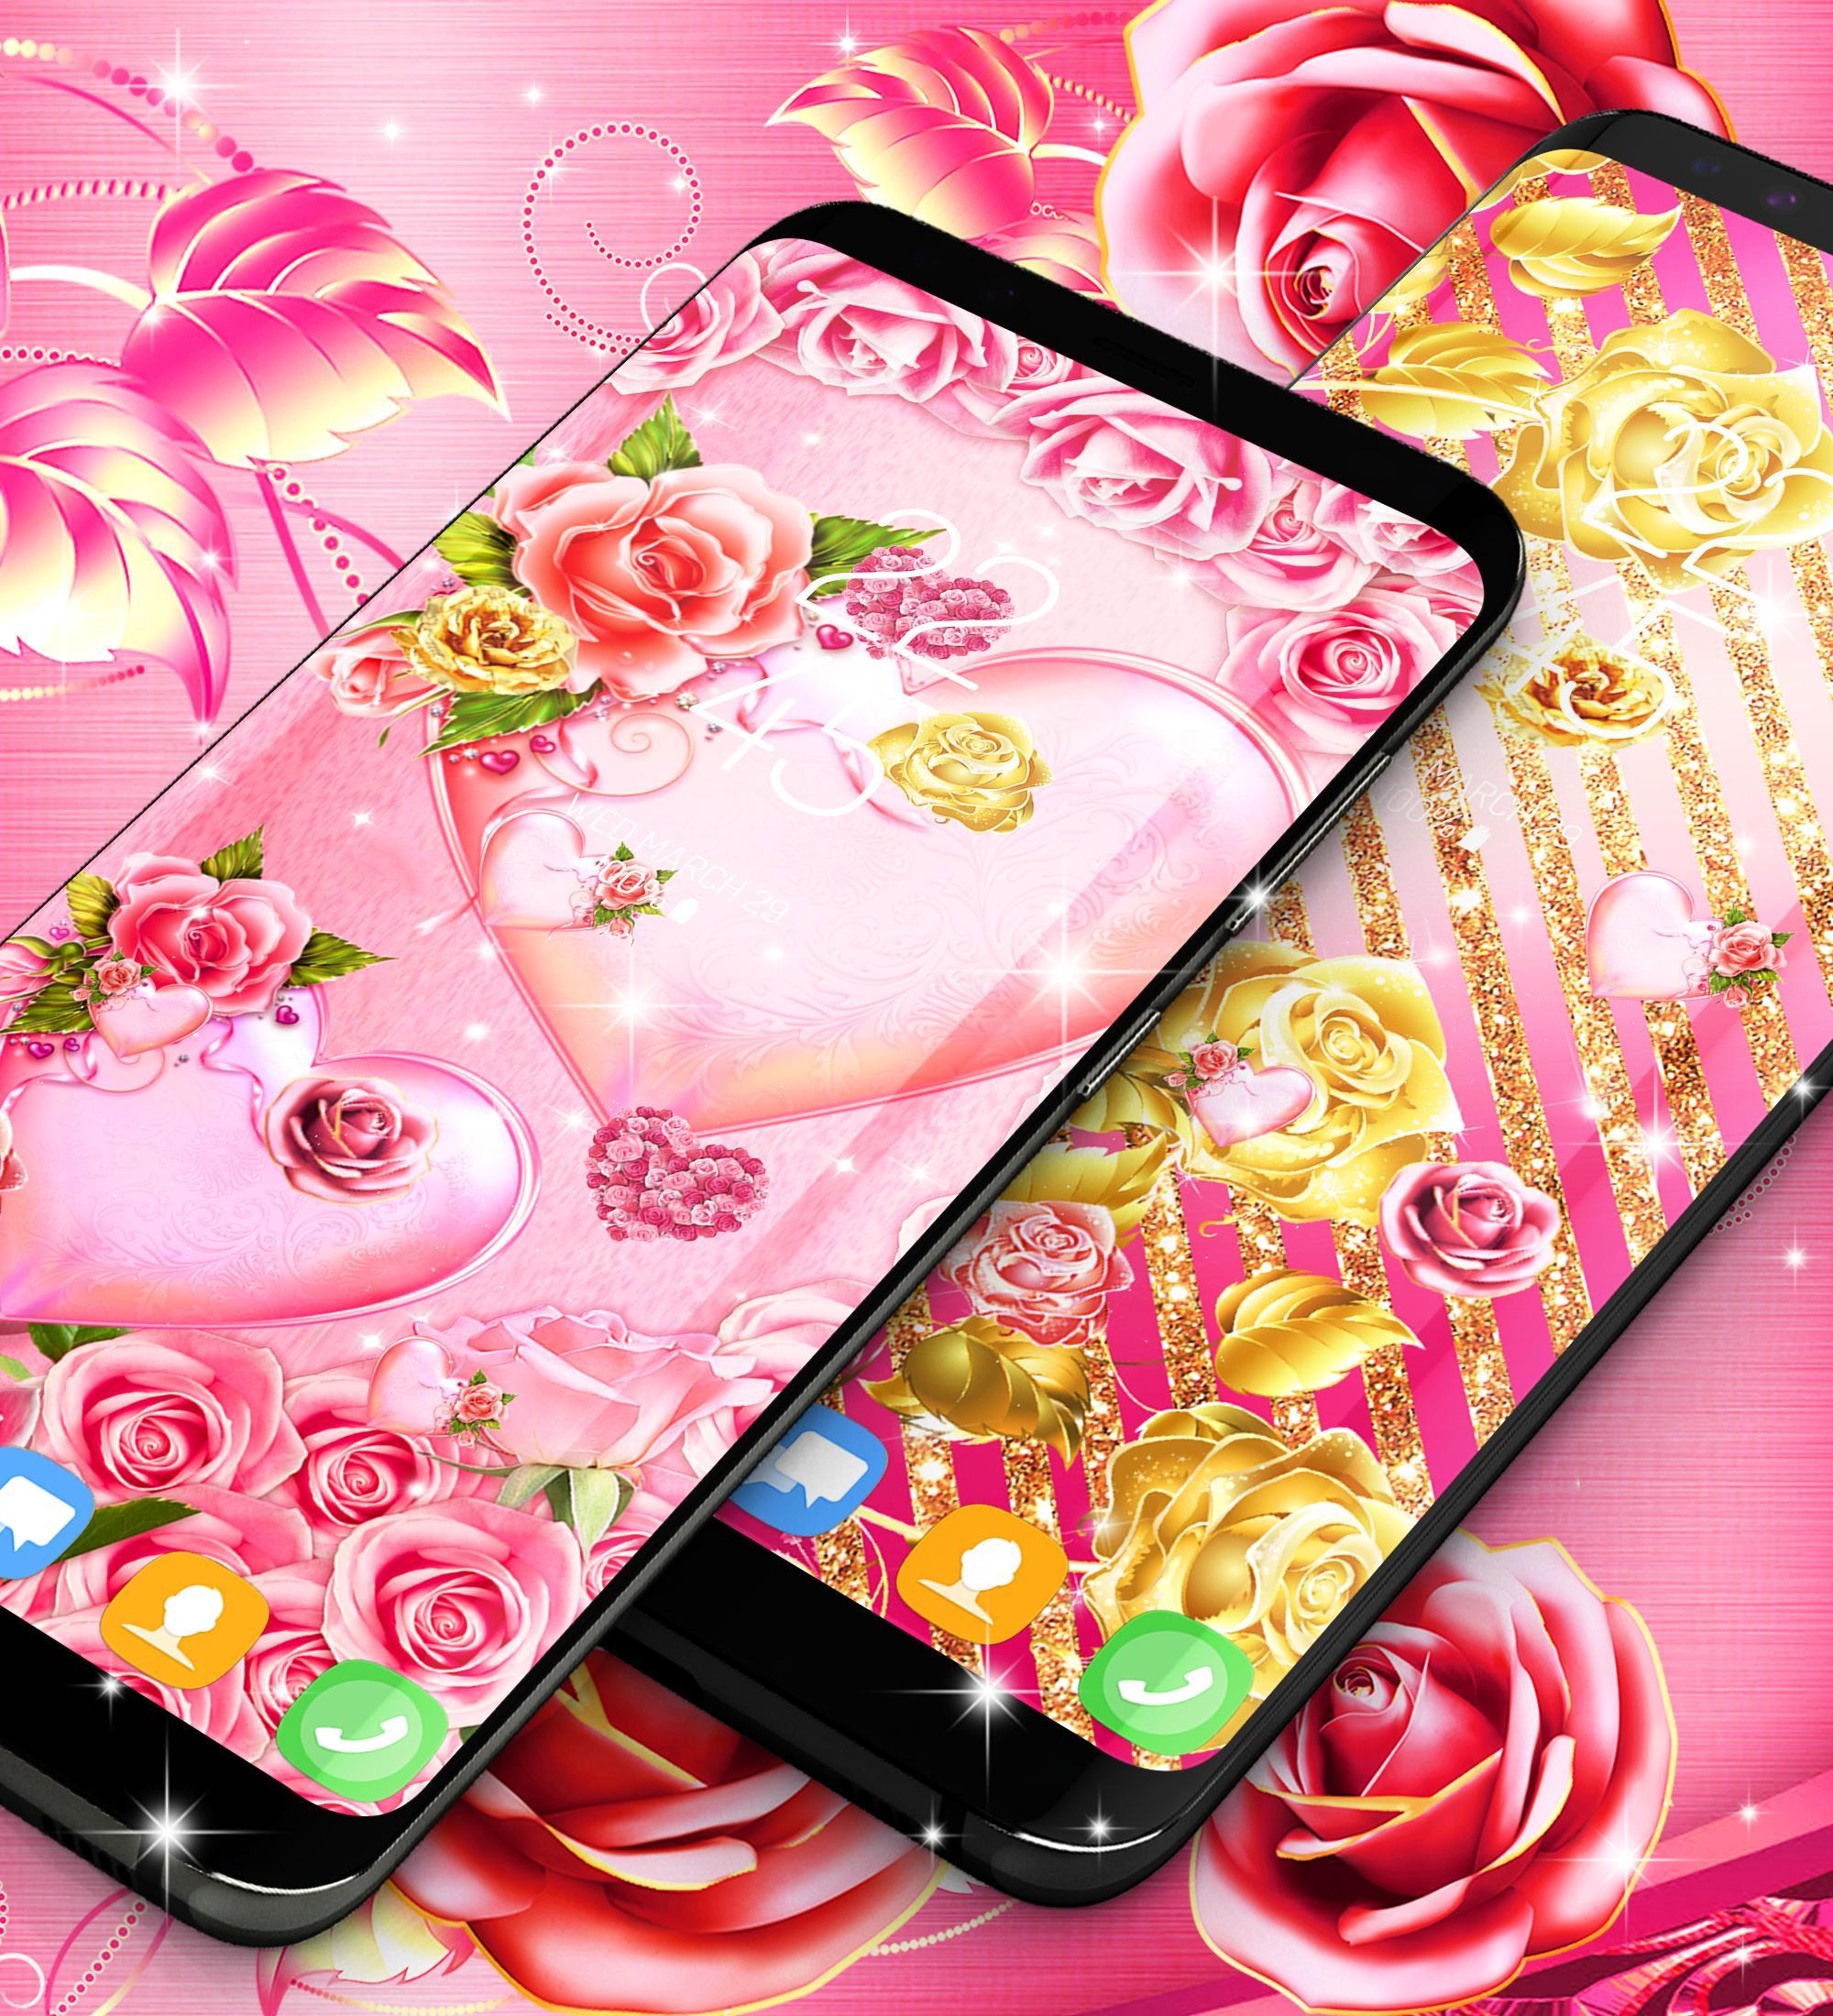 [31+] Pink Roses Phone Wallpapers | WallpaperSafari